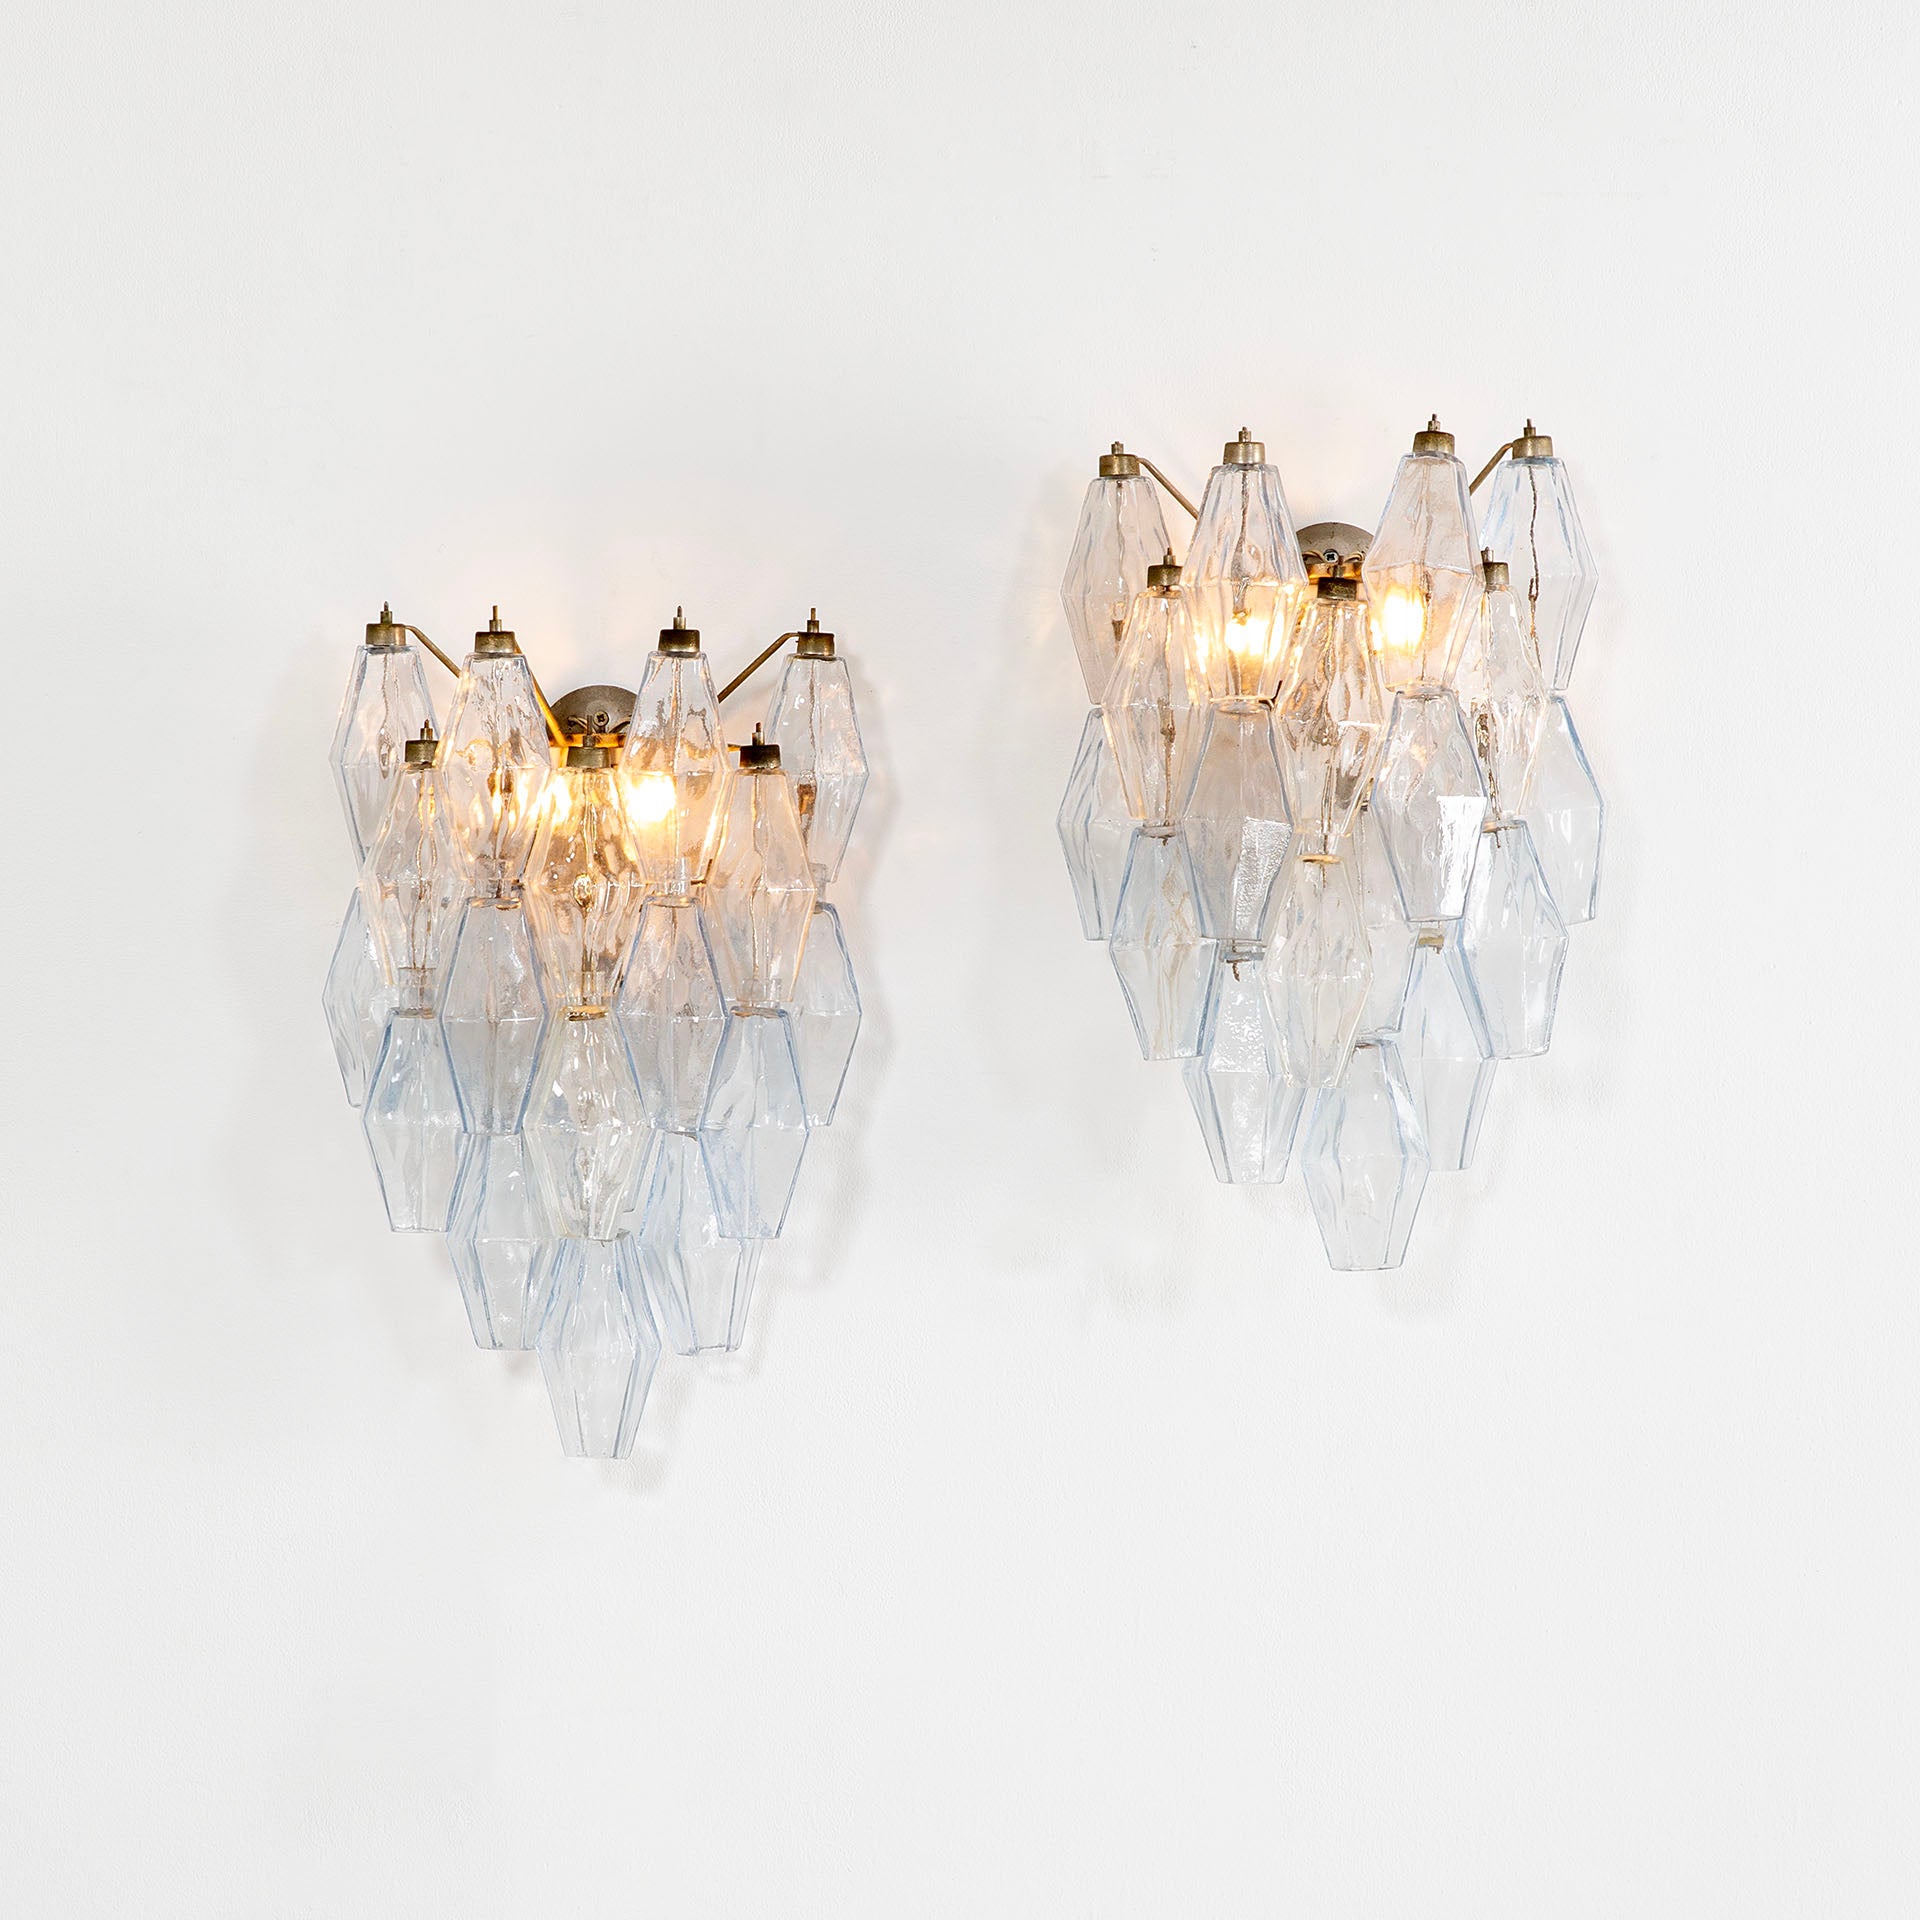 20th Century Venini Pair of Wall Lamps Mod Poliedri in Colored Murano Glass, 60s For Sale